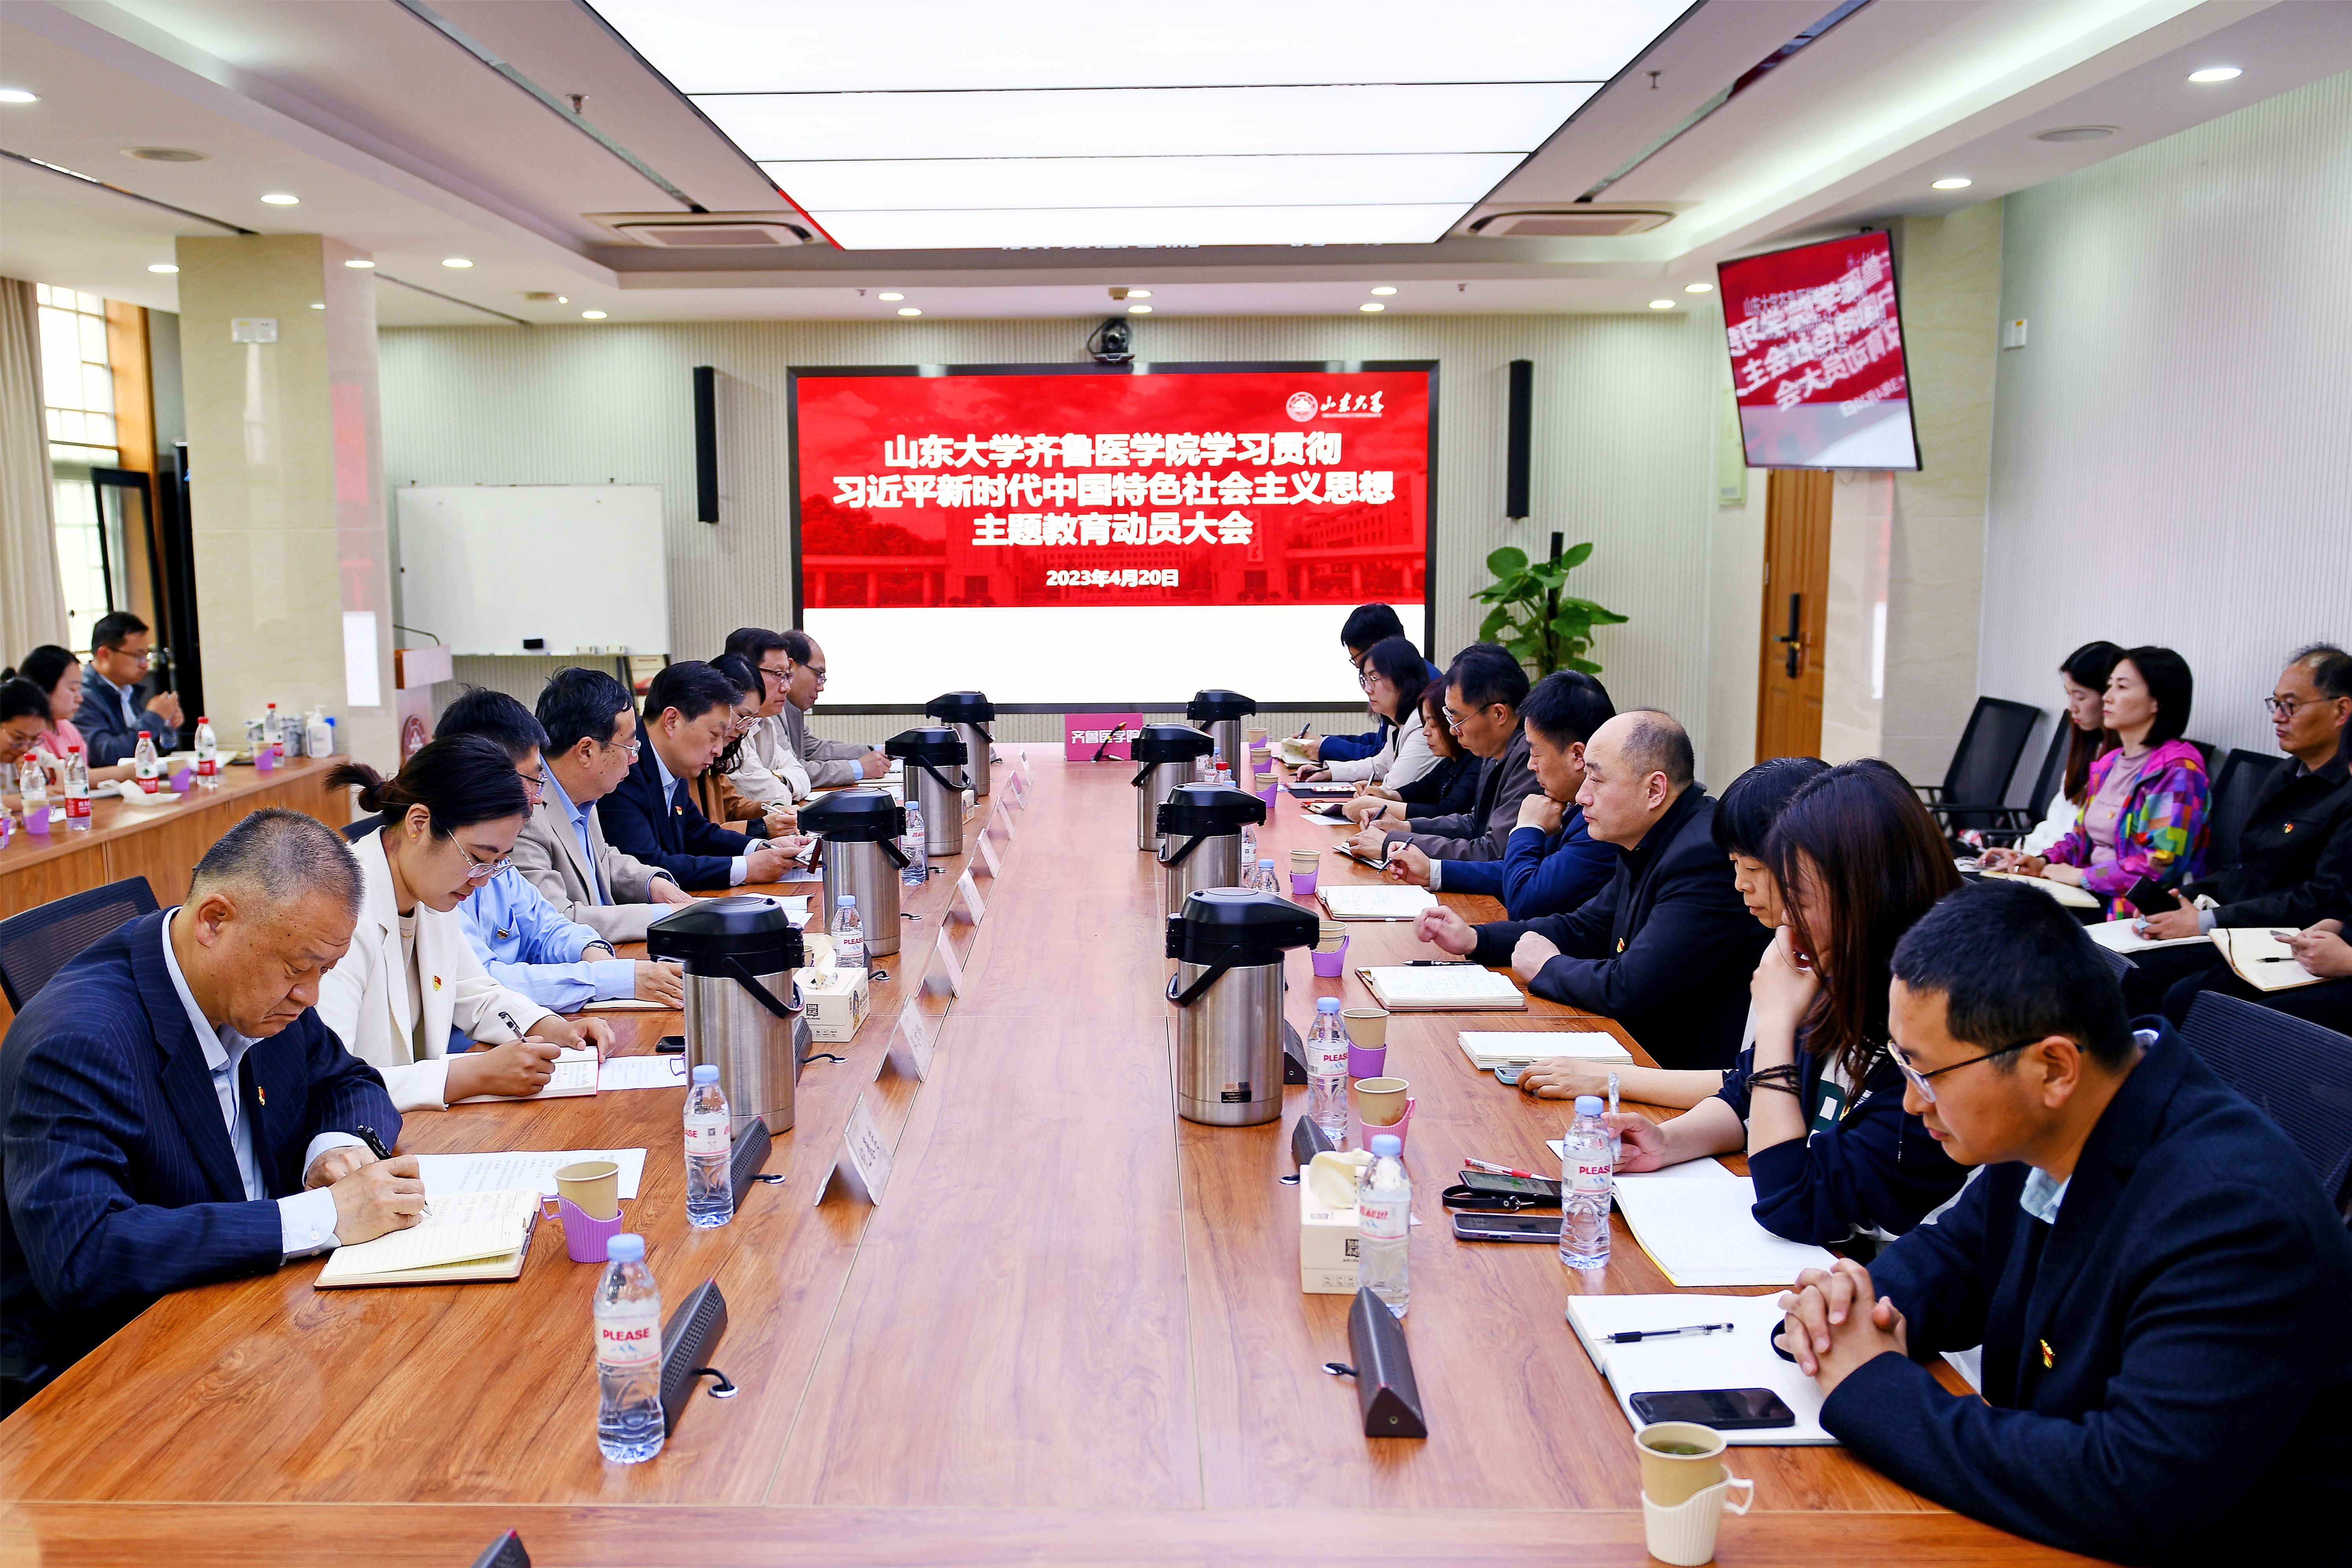 齐鲁医学院召开学习贯彻习近平新时代中国特色社会主义思想主题教育动员大会